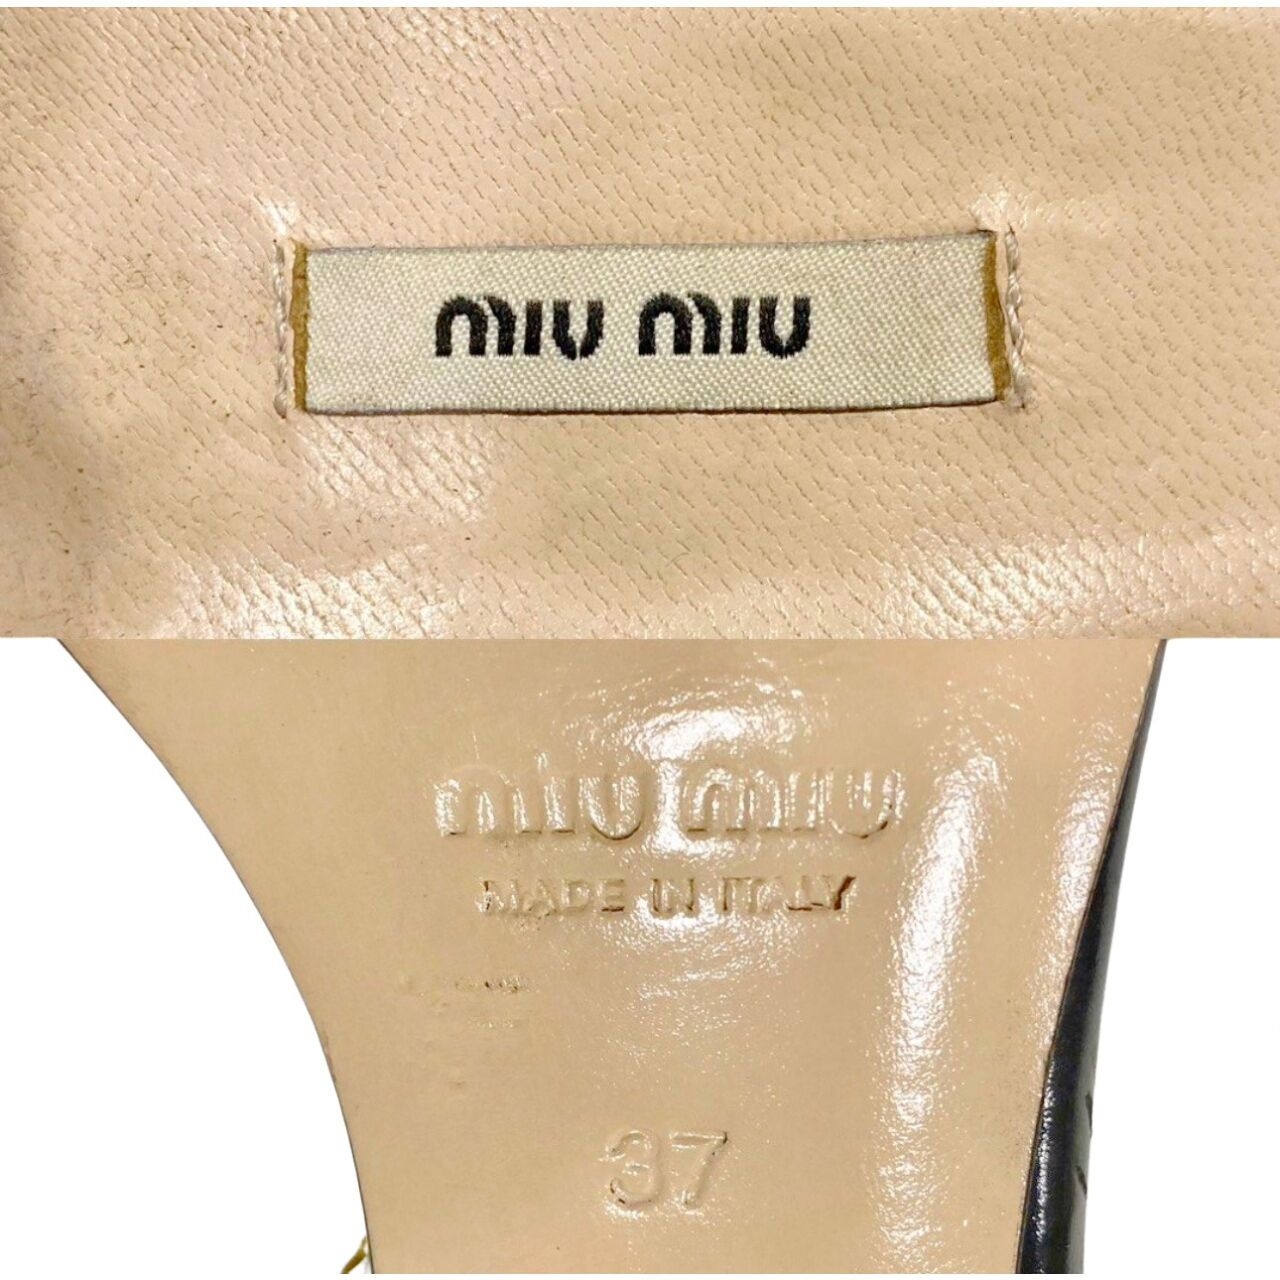 Miu Miu Patent Leather Black Heels